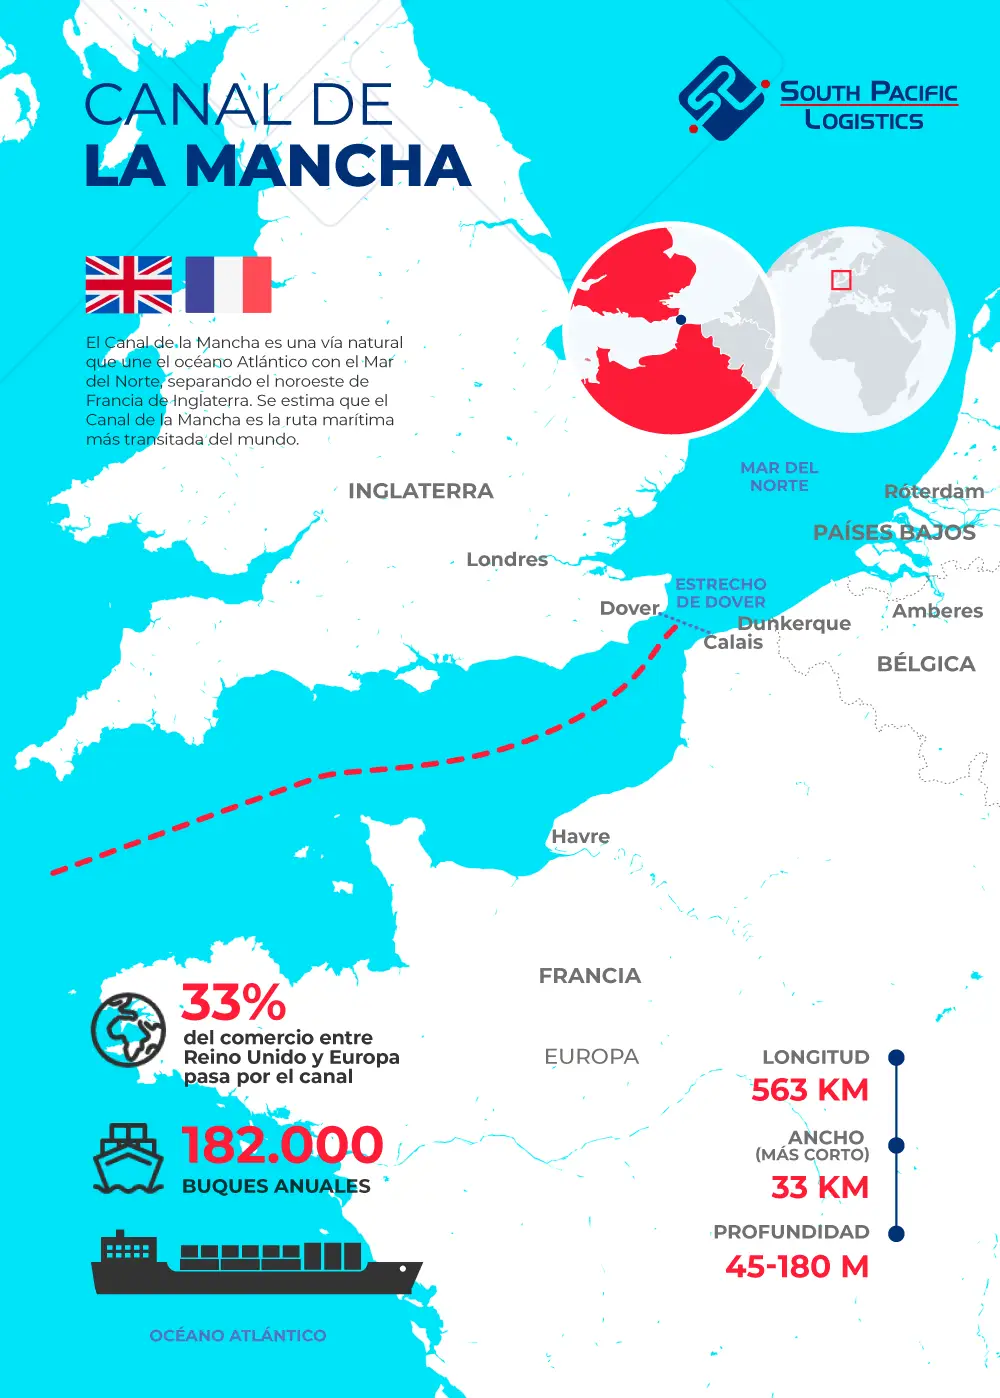 Infografía sobre el Canal de la Mancha y su importancia para el transporte marítimo